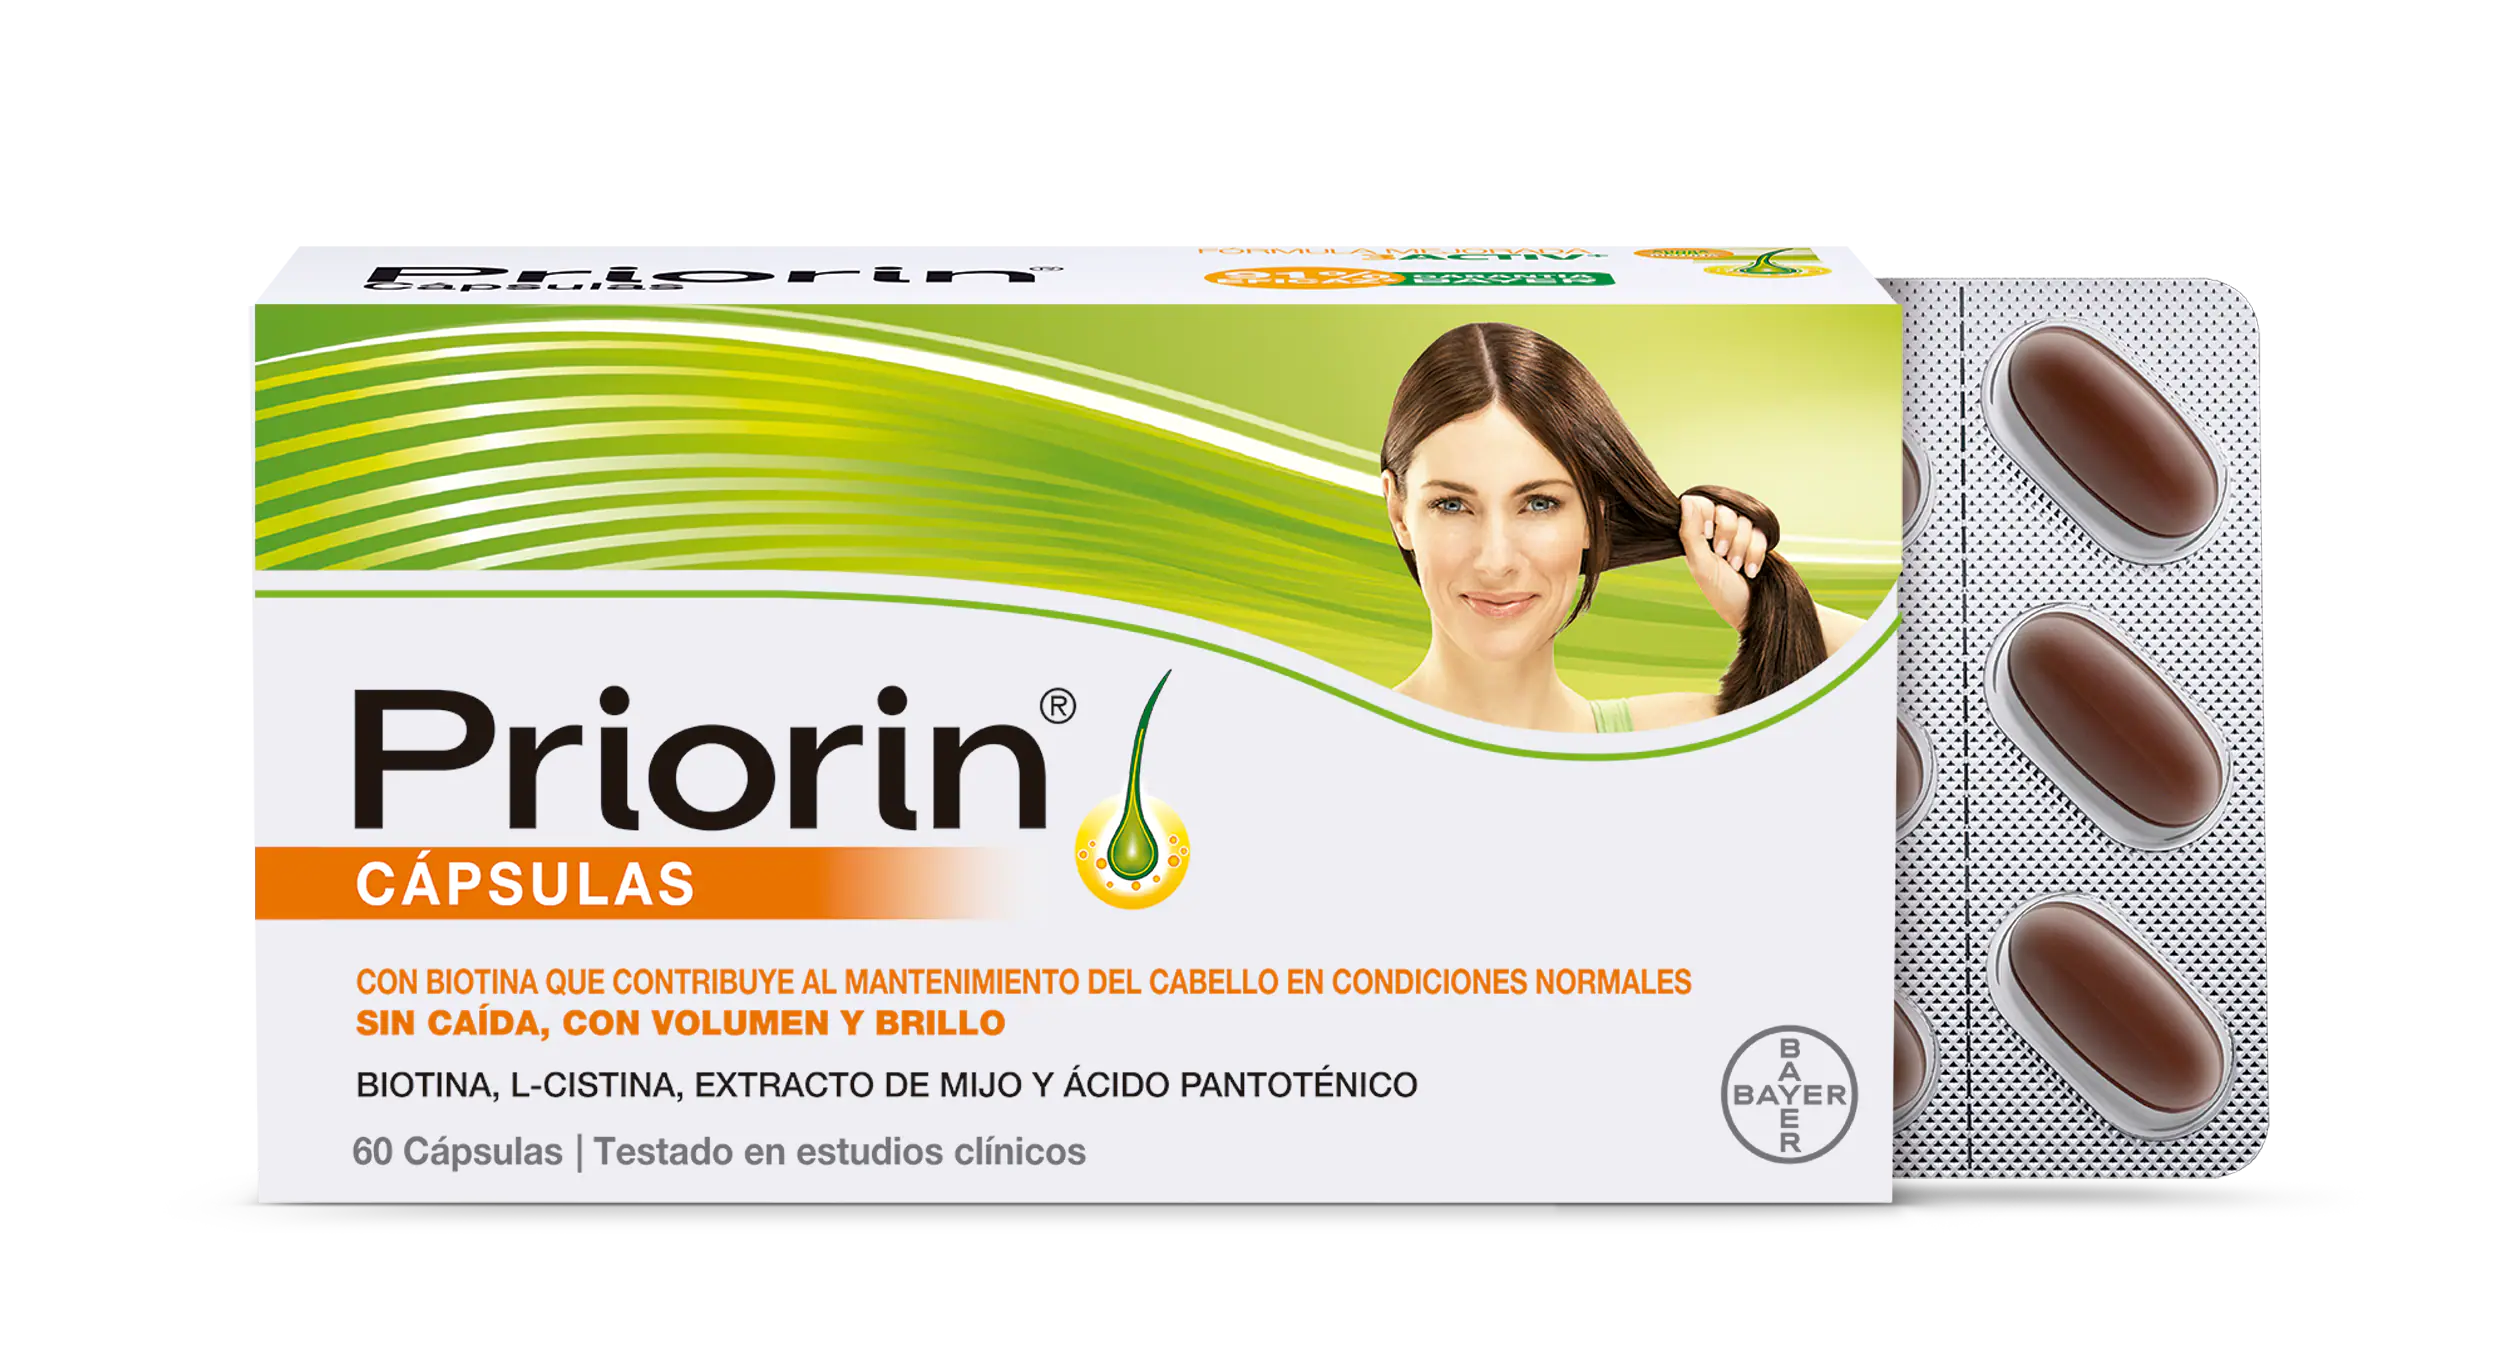 Priorin® Cápsulas de BAYER. Tratamiento para la caída y salud del cabello gracias a su exclusiva fórmula con Biotina, que contribuye al mantenimiento del cabello en condiciones normales.